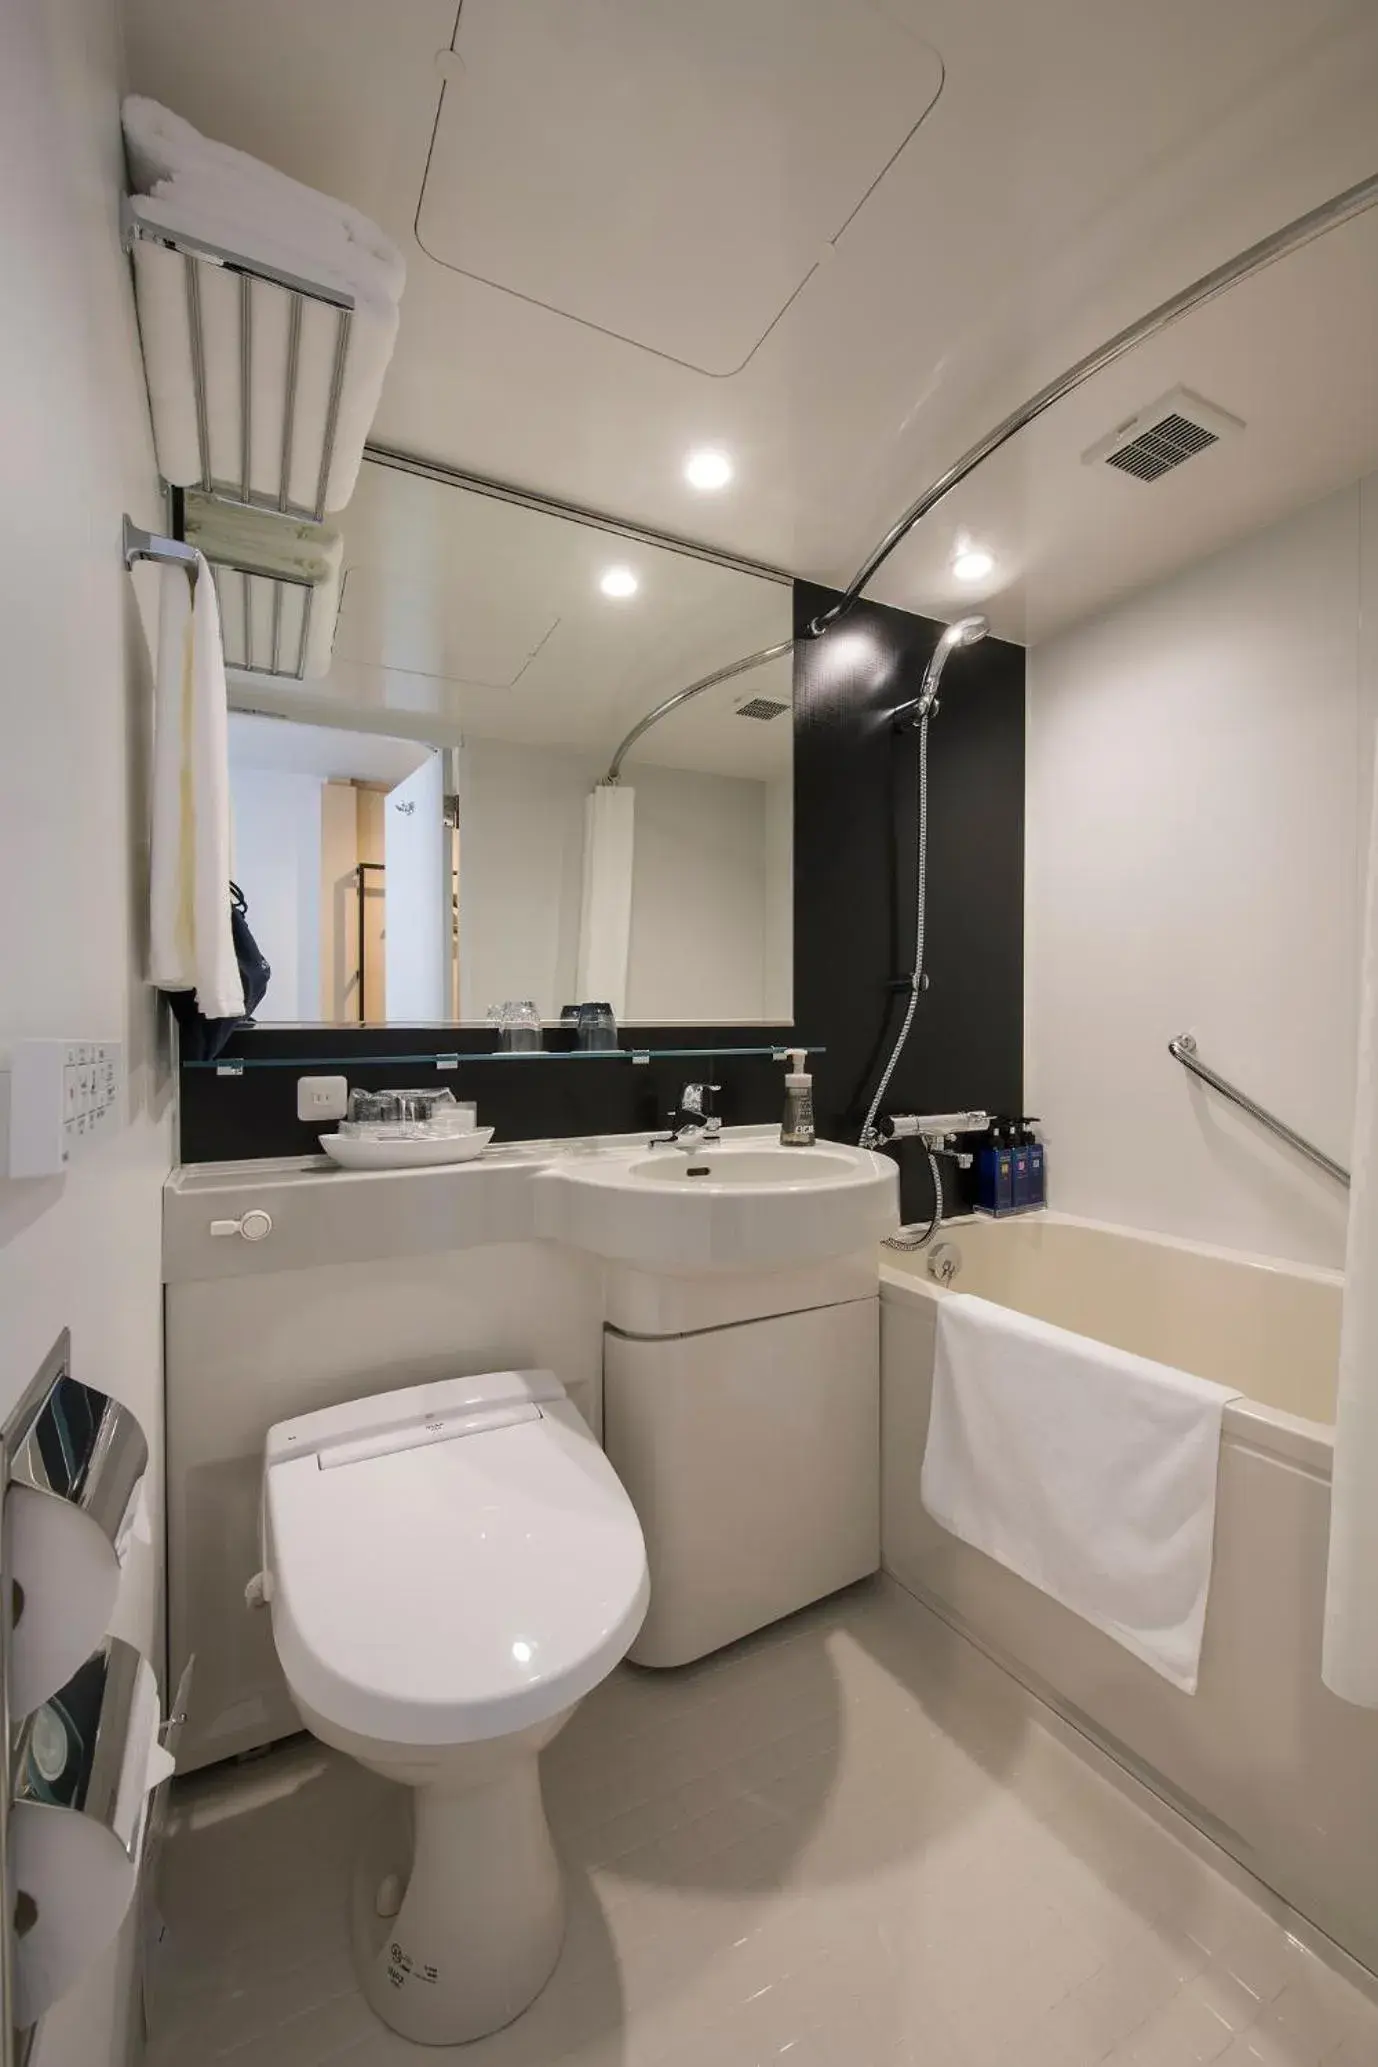 Bathroom in Tmark City Hotel Sapporo Odori